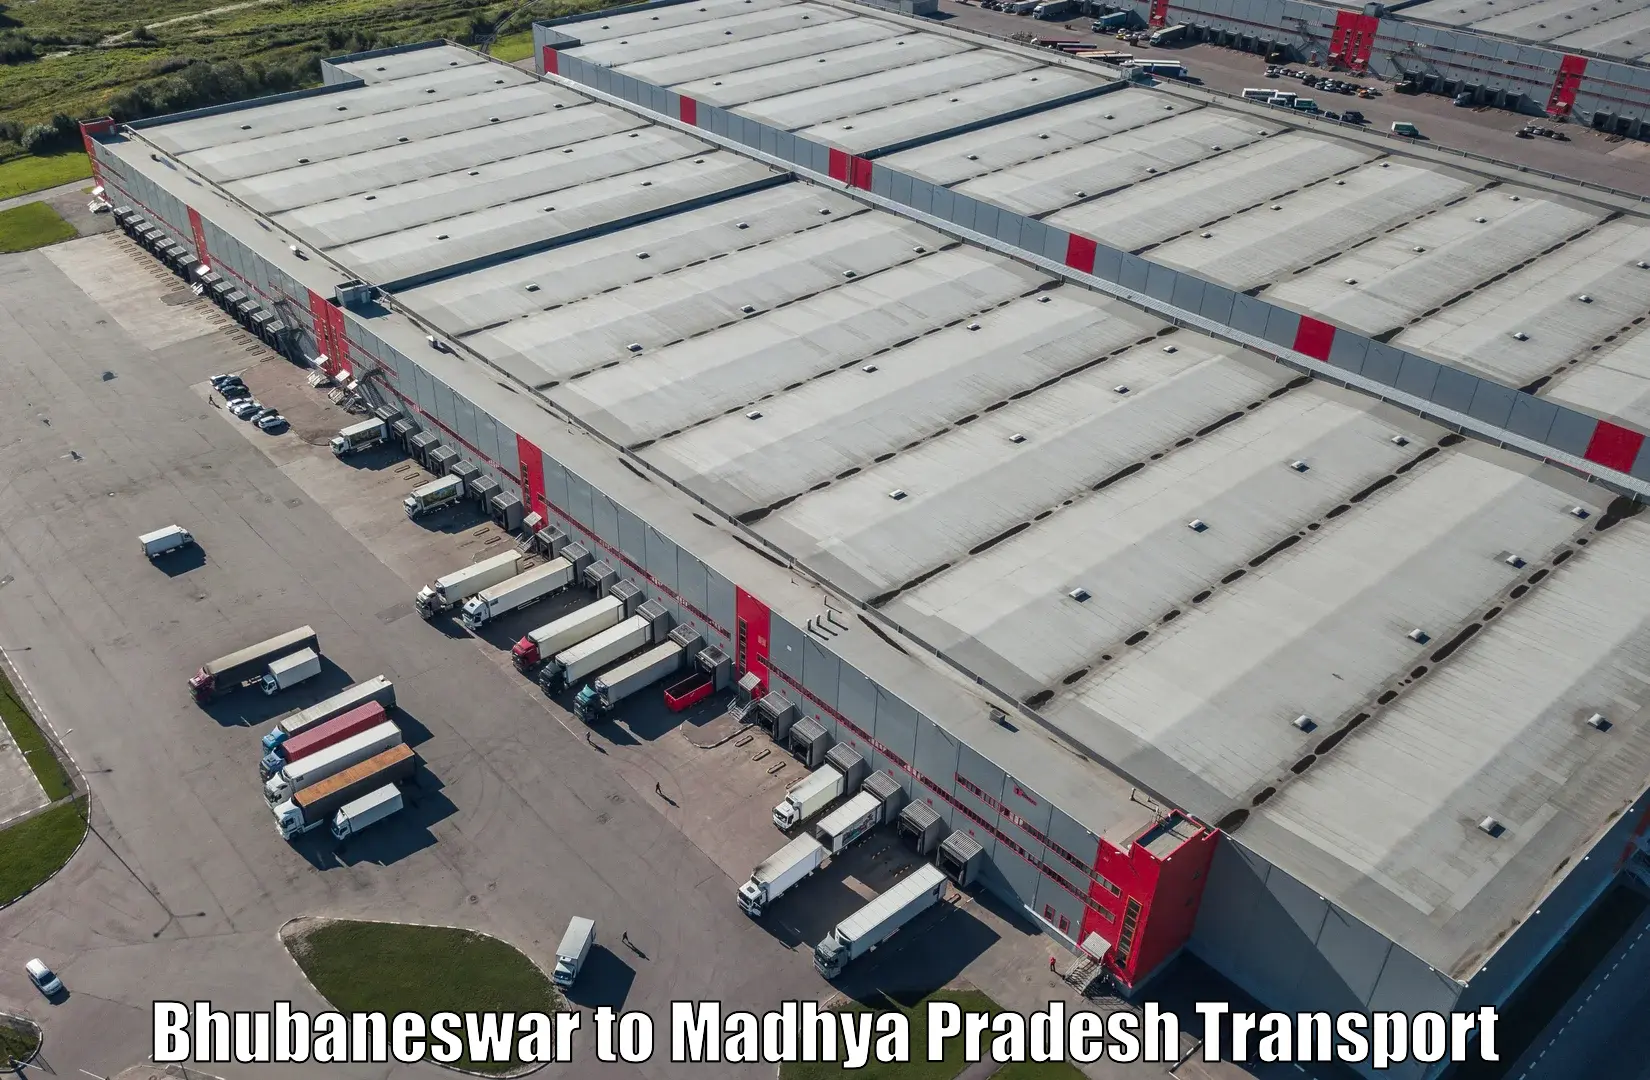 International cargo transportation services Bhubaneswar to Amarpatan